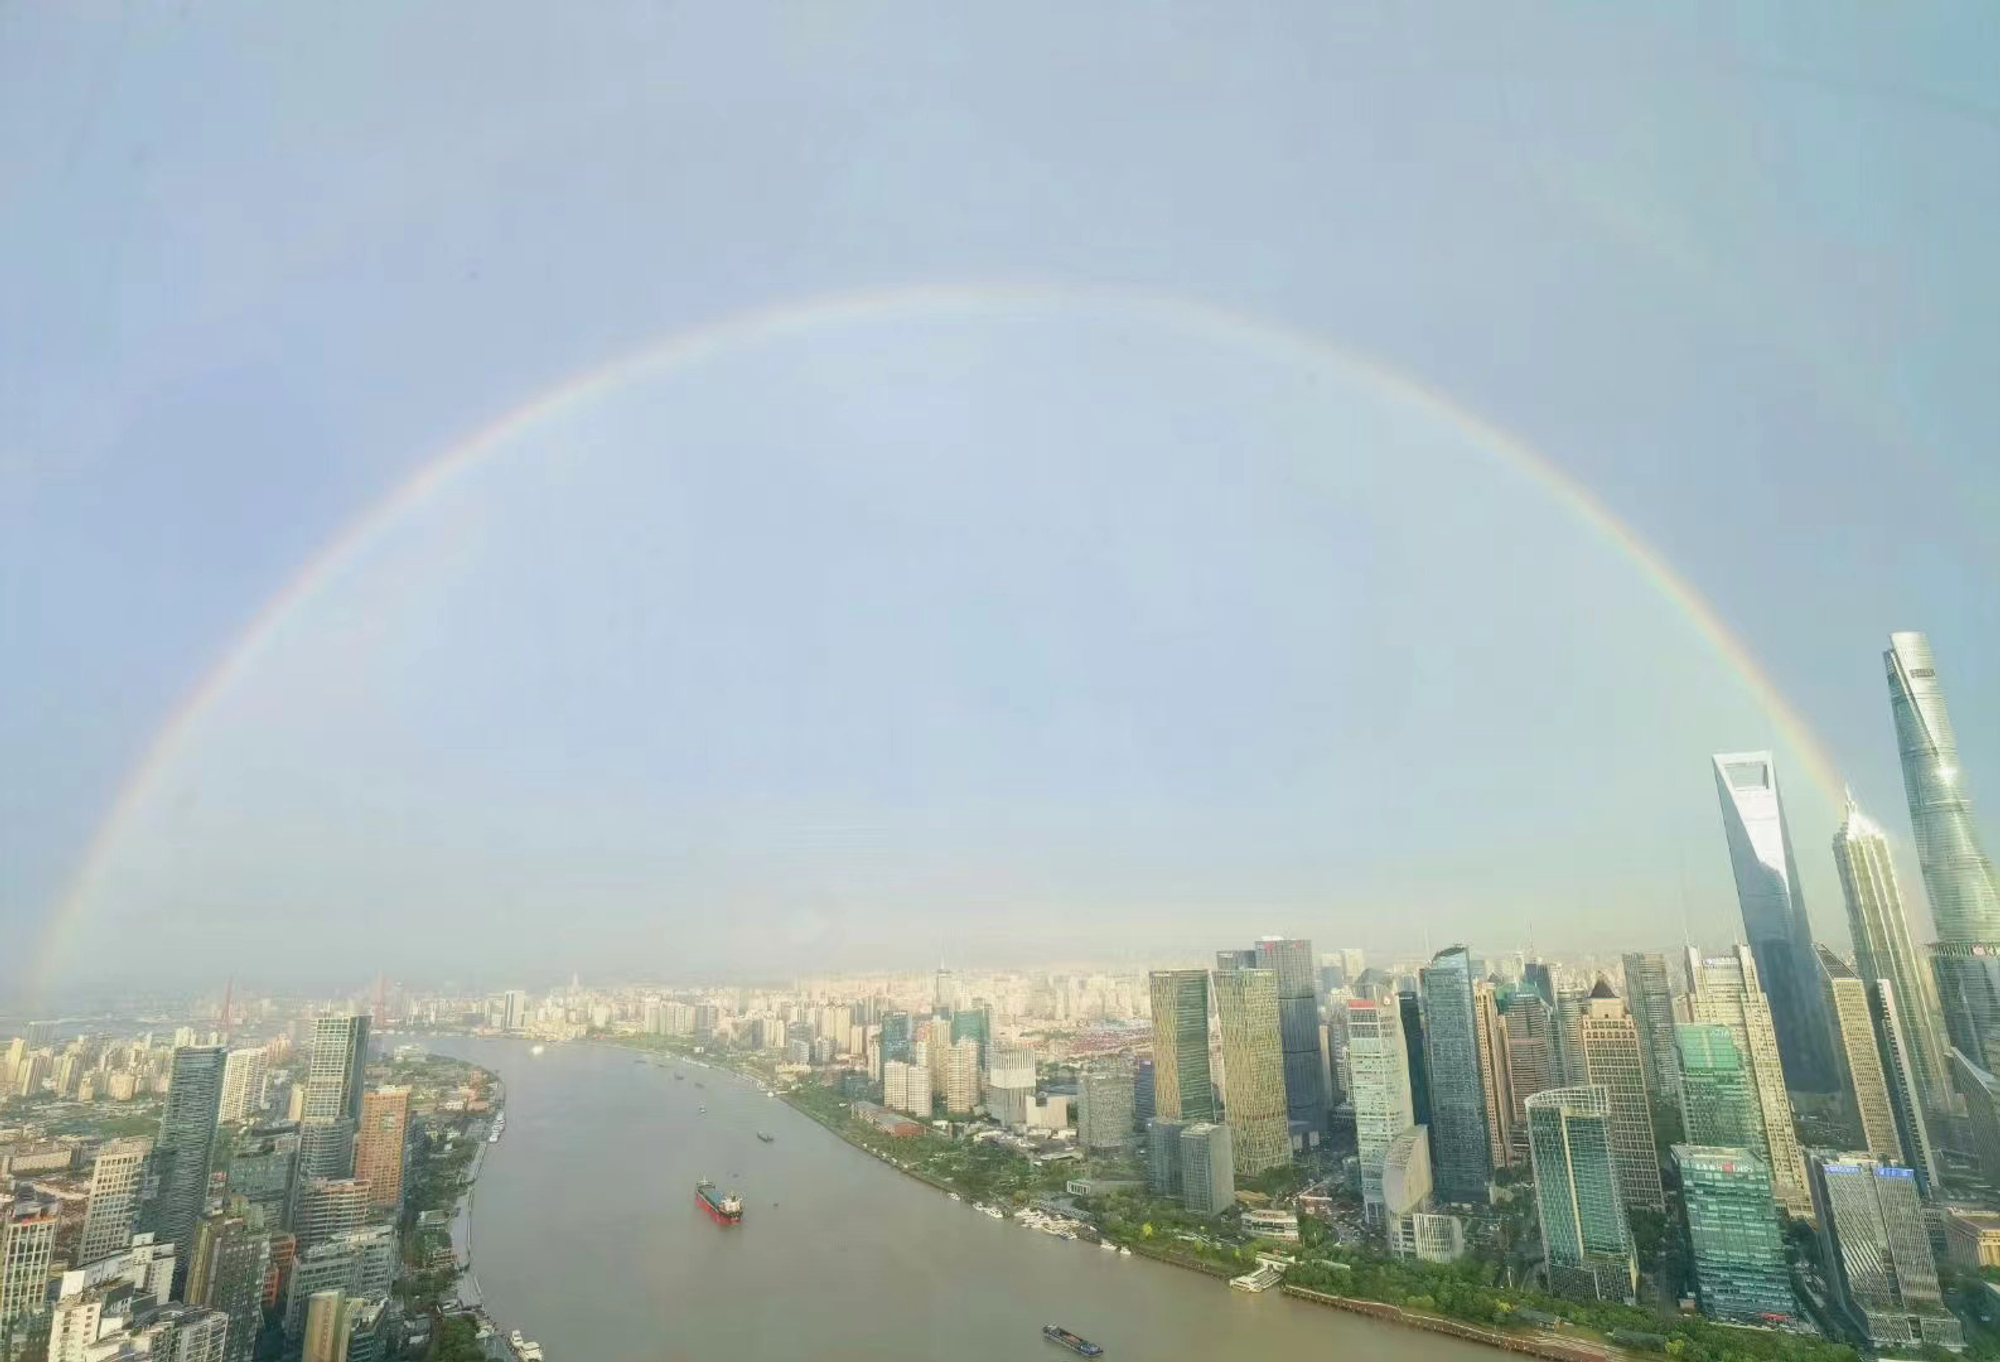 2022年6月29日 天堂的恶魔 投稿 拍摄于上海